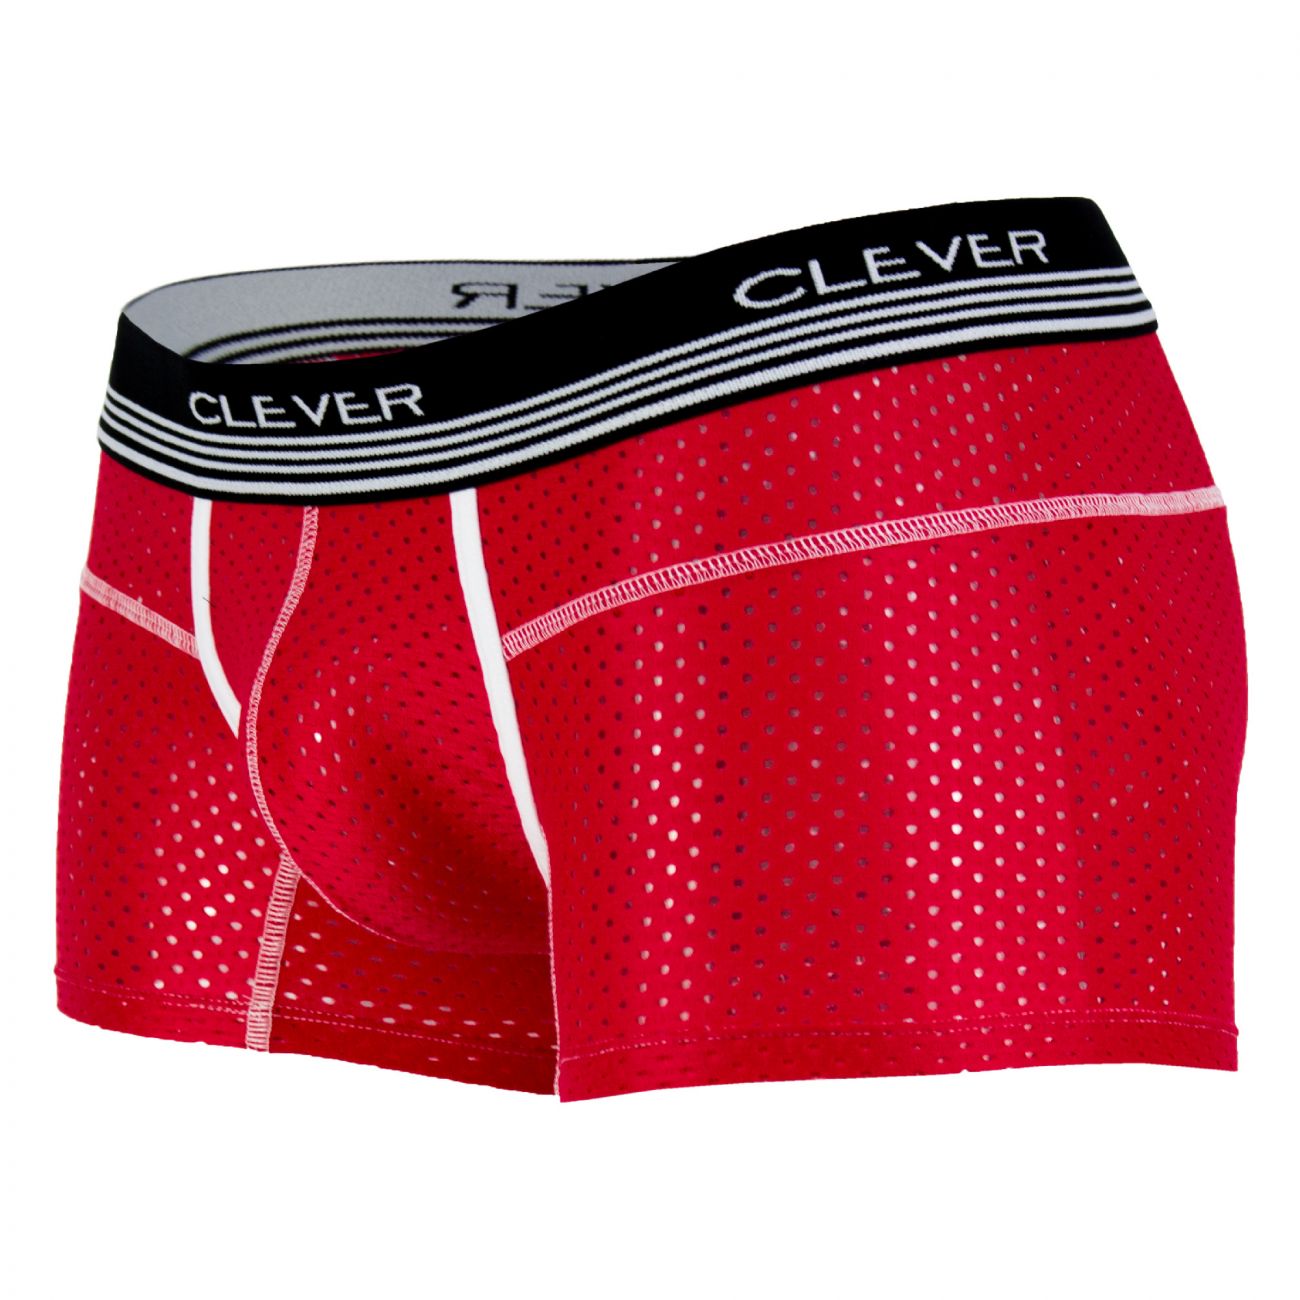 Mens Underwear: Clever 2365 Danish Boxer Briefs | eBay